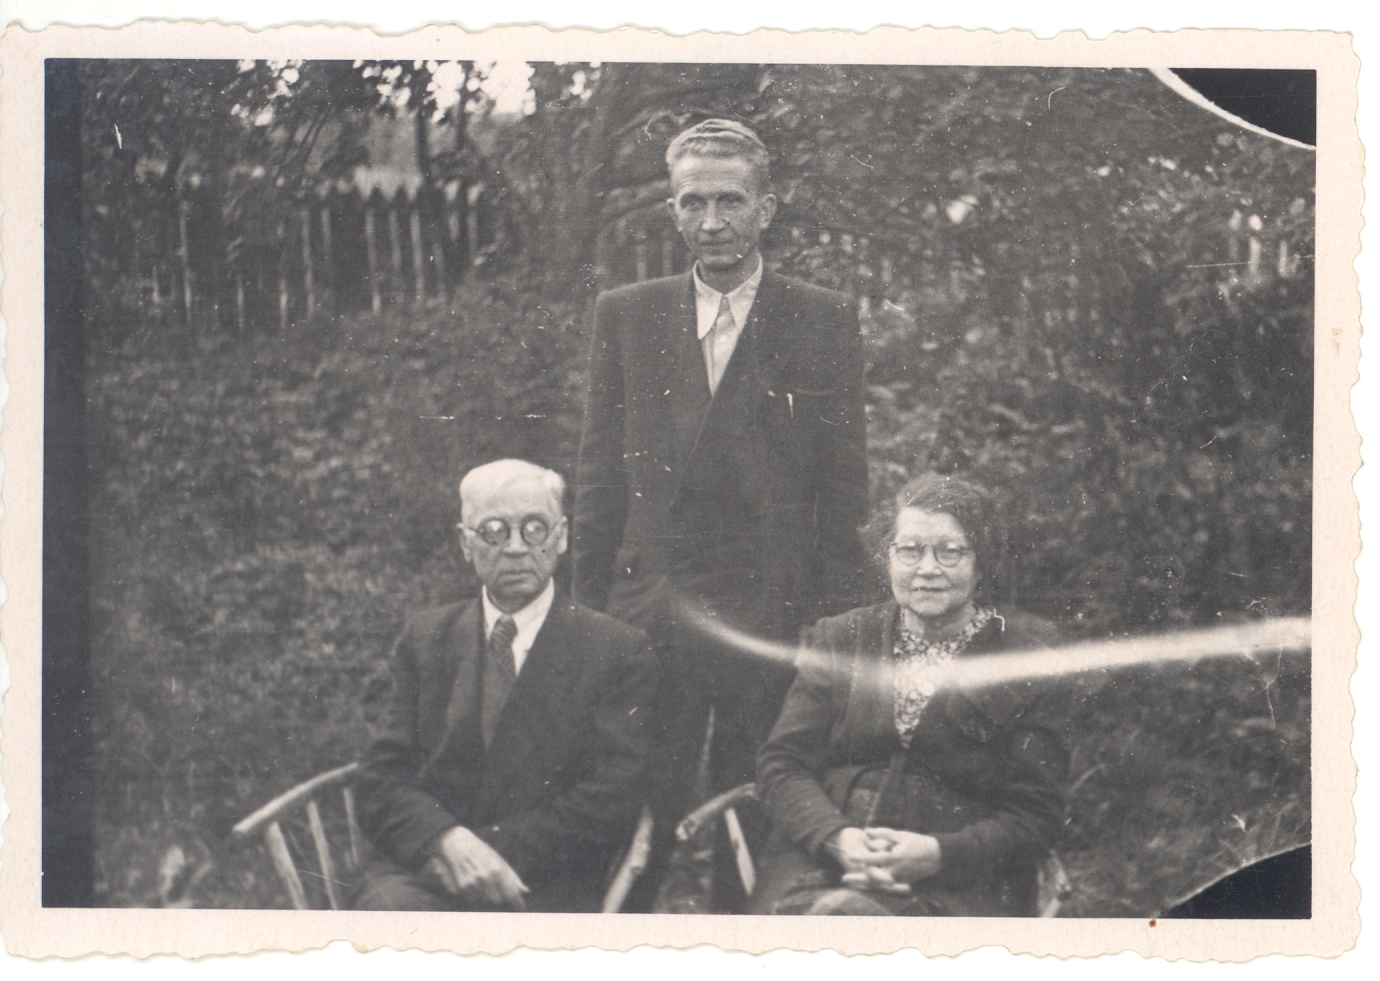 Ed. Hubel, Ed. Roos and Vanda Hubel Viljandi 19. VIII 1957